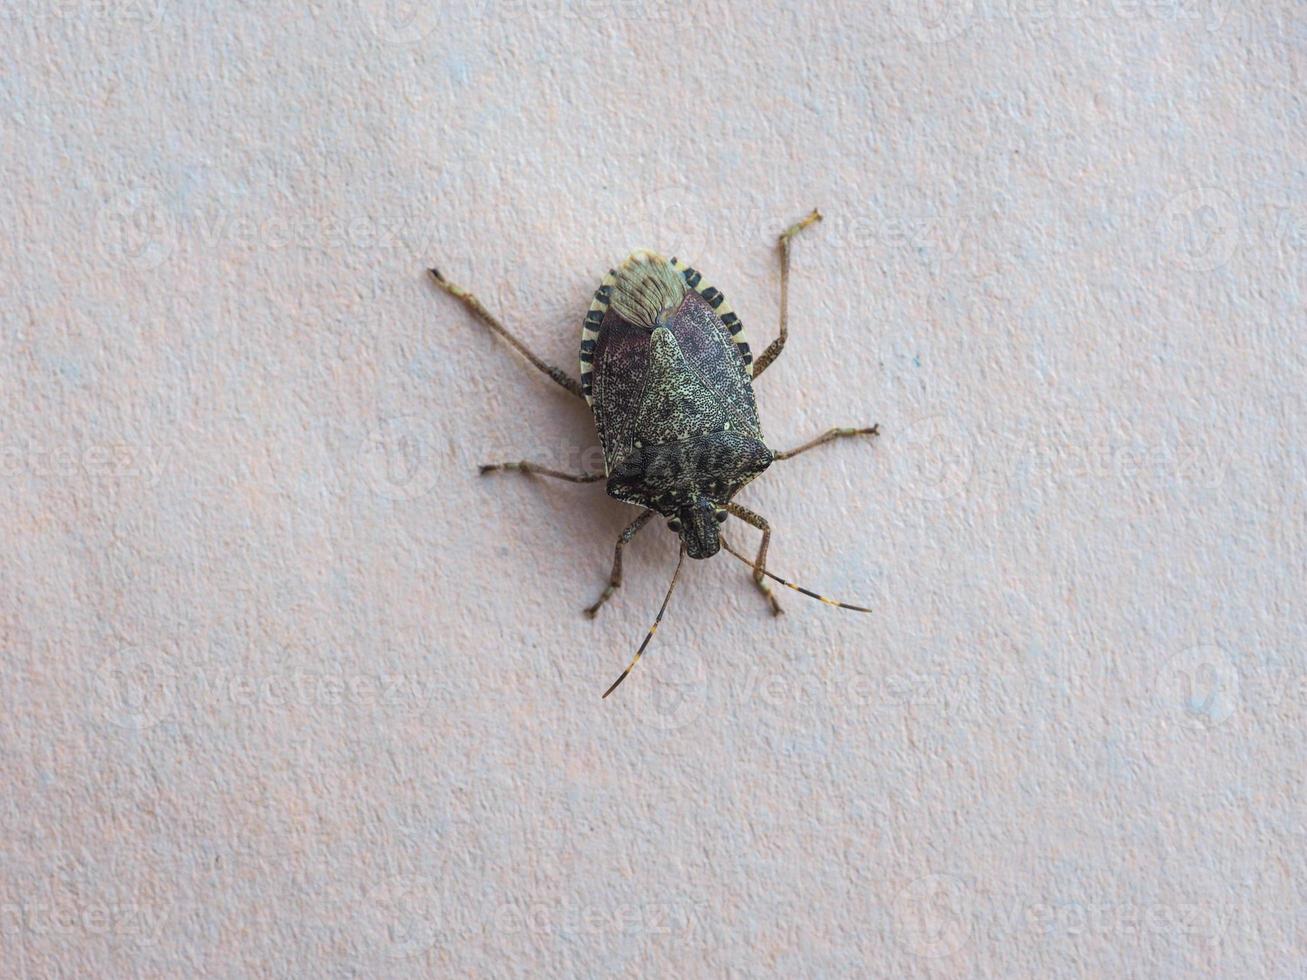 Escudo verde bug animal de clase insectos insectos foto